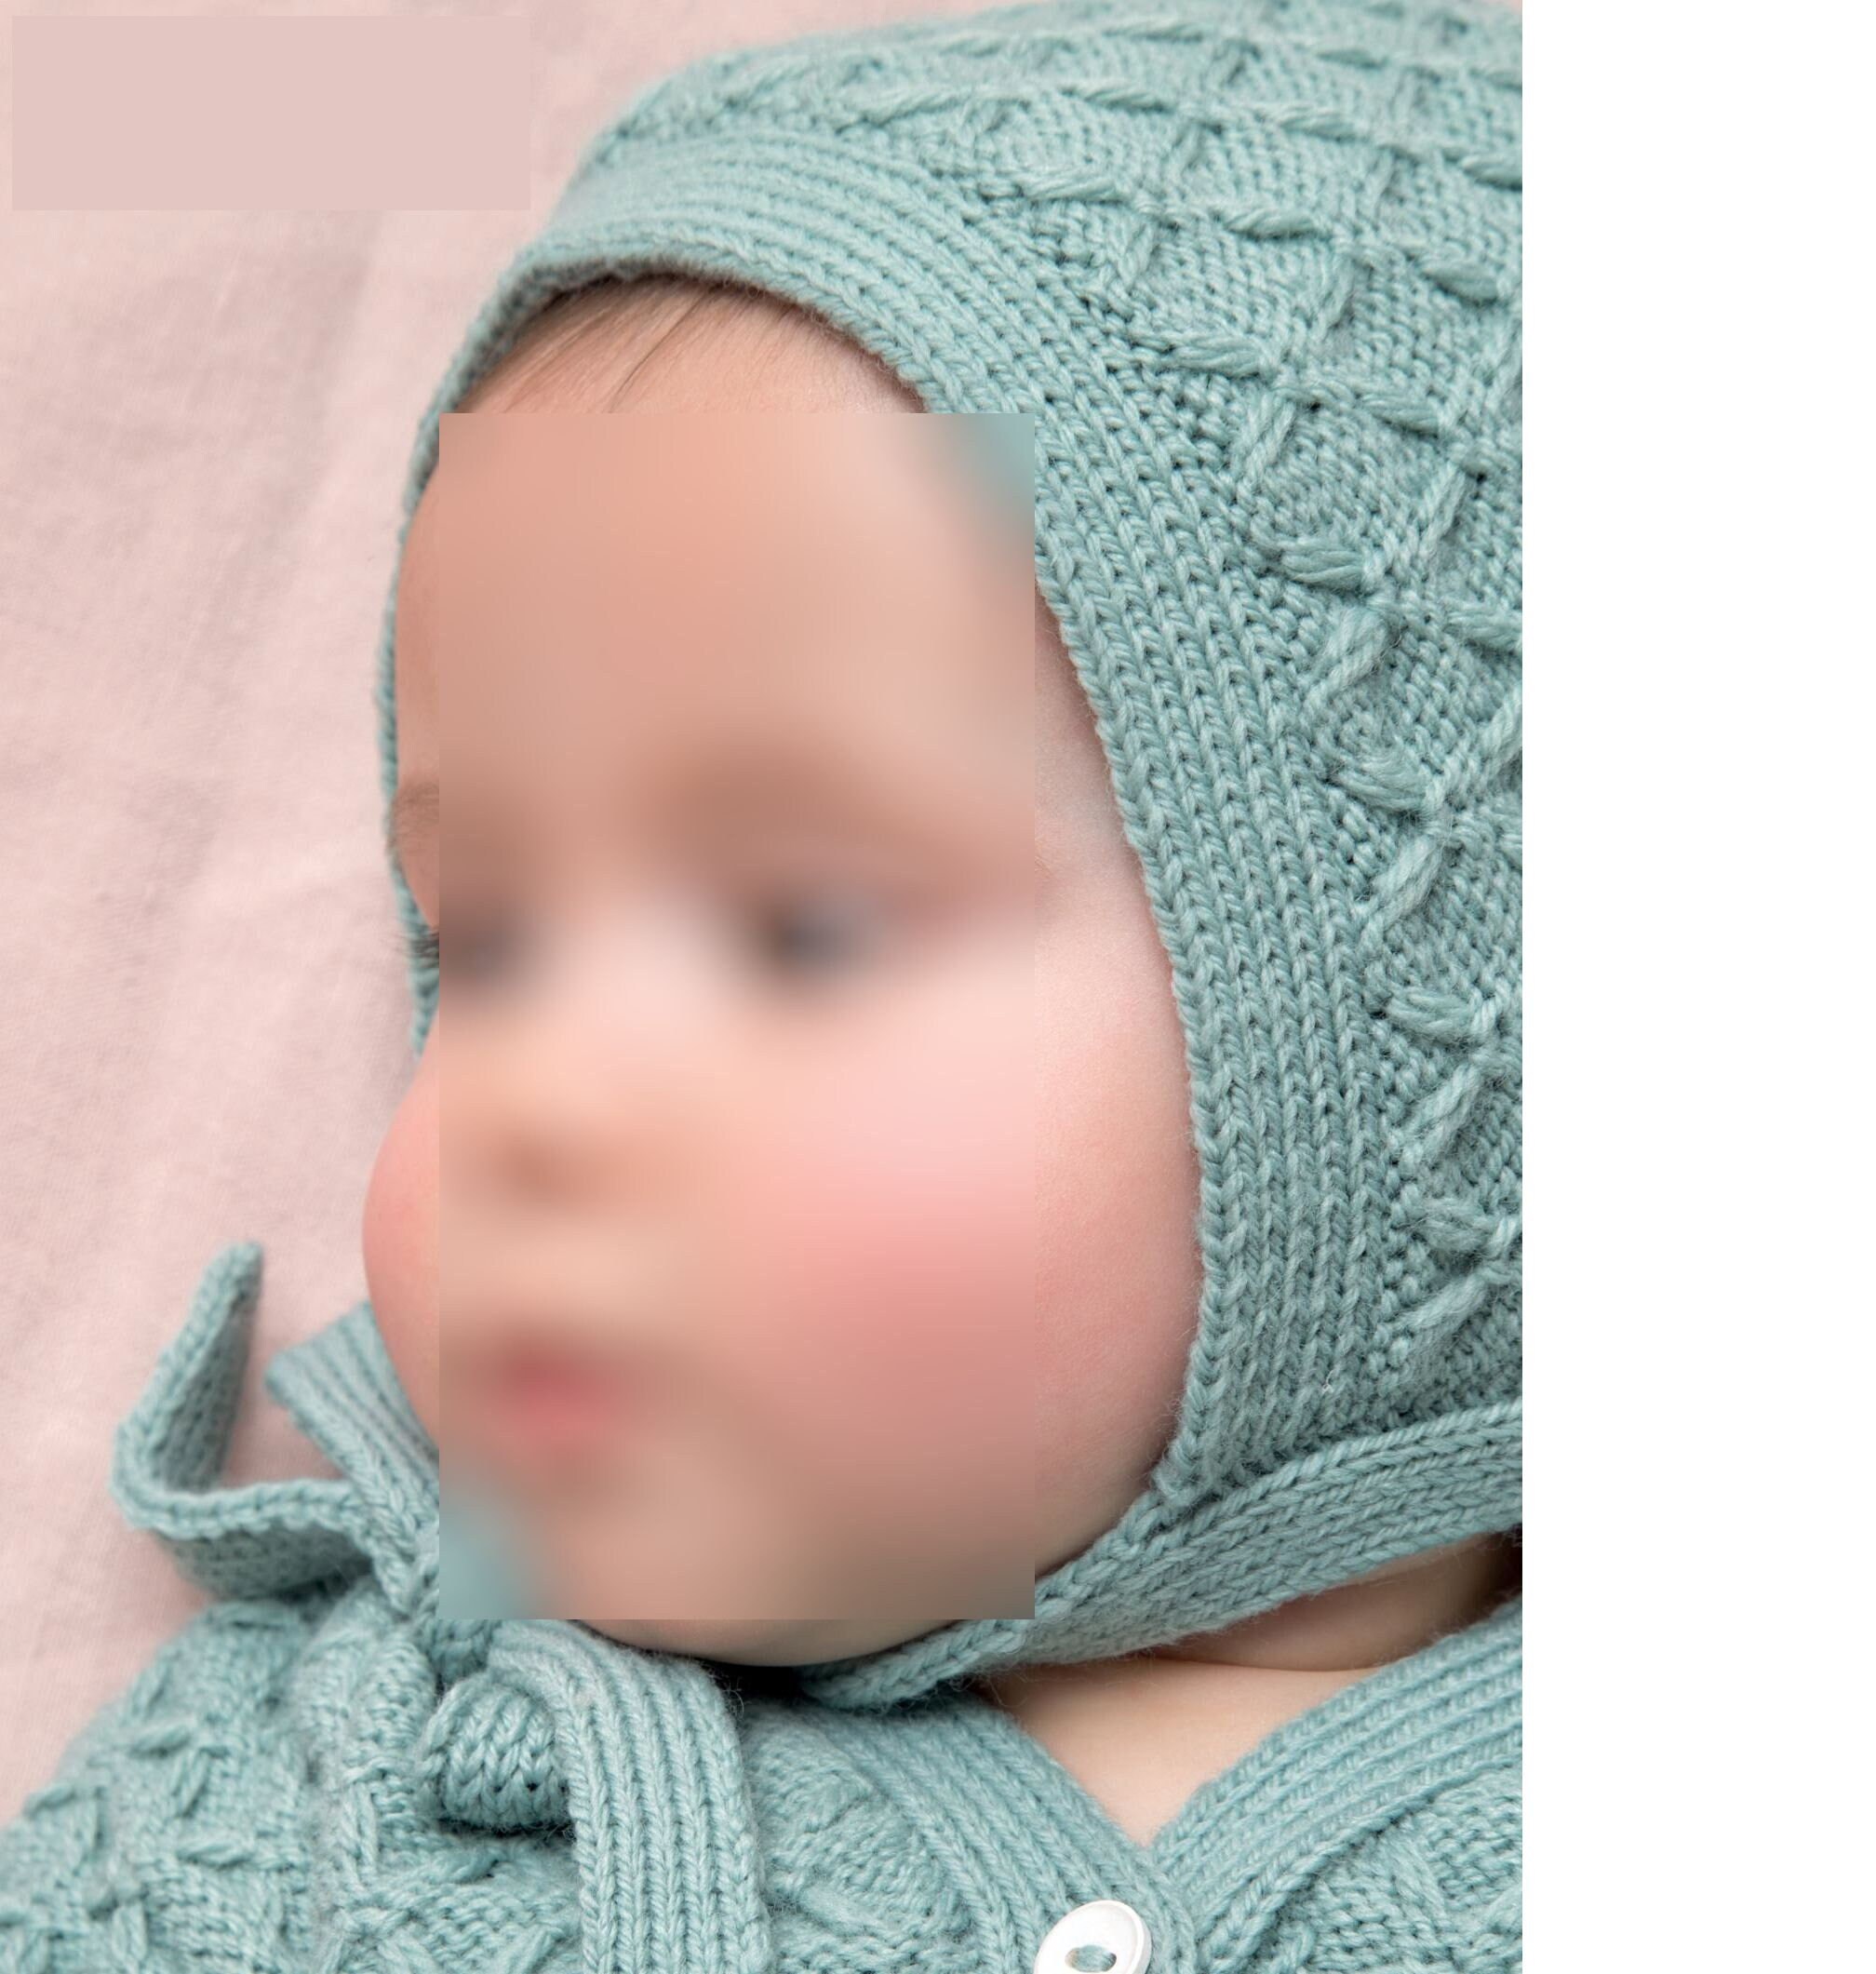 Béguin 3 mois ou bonnet bebe, LAIT calinou tricoté main, layette tricot bb,  modèle SUR COMMANDE